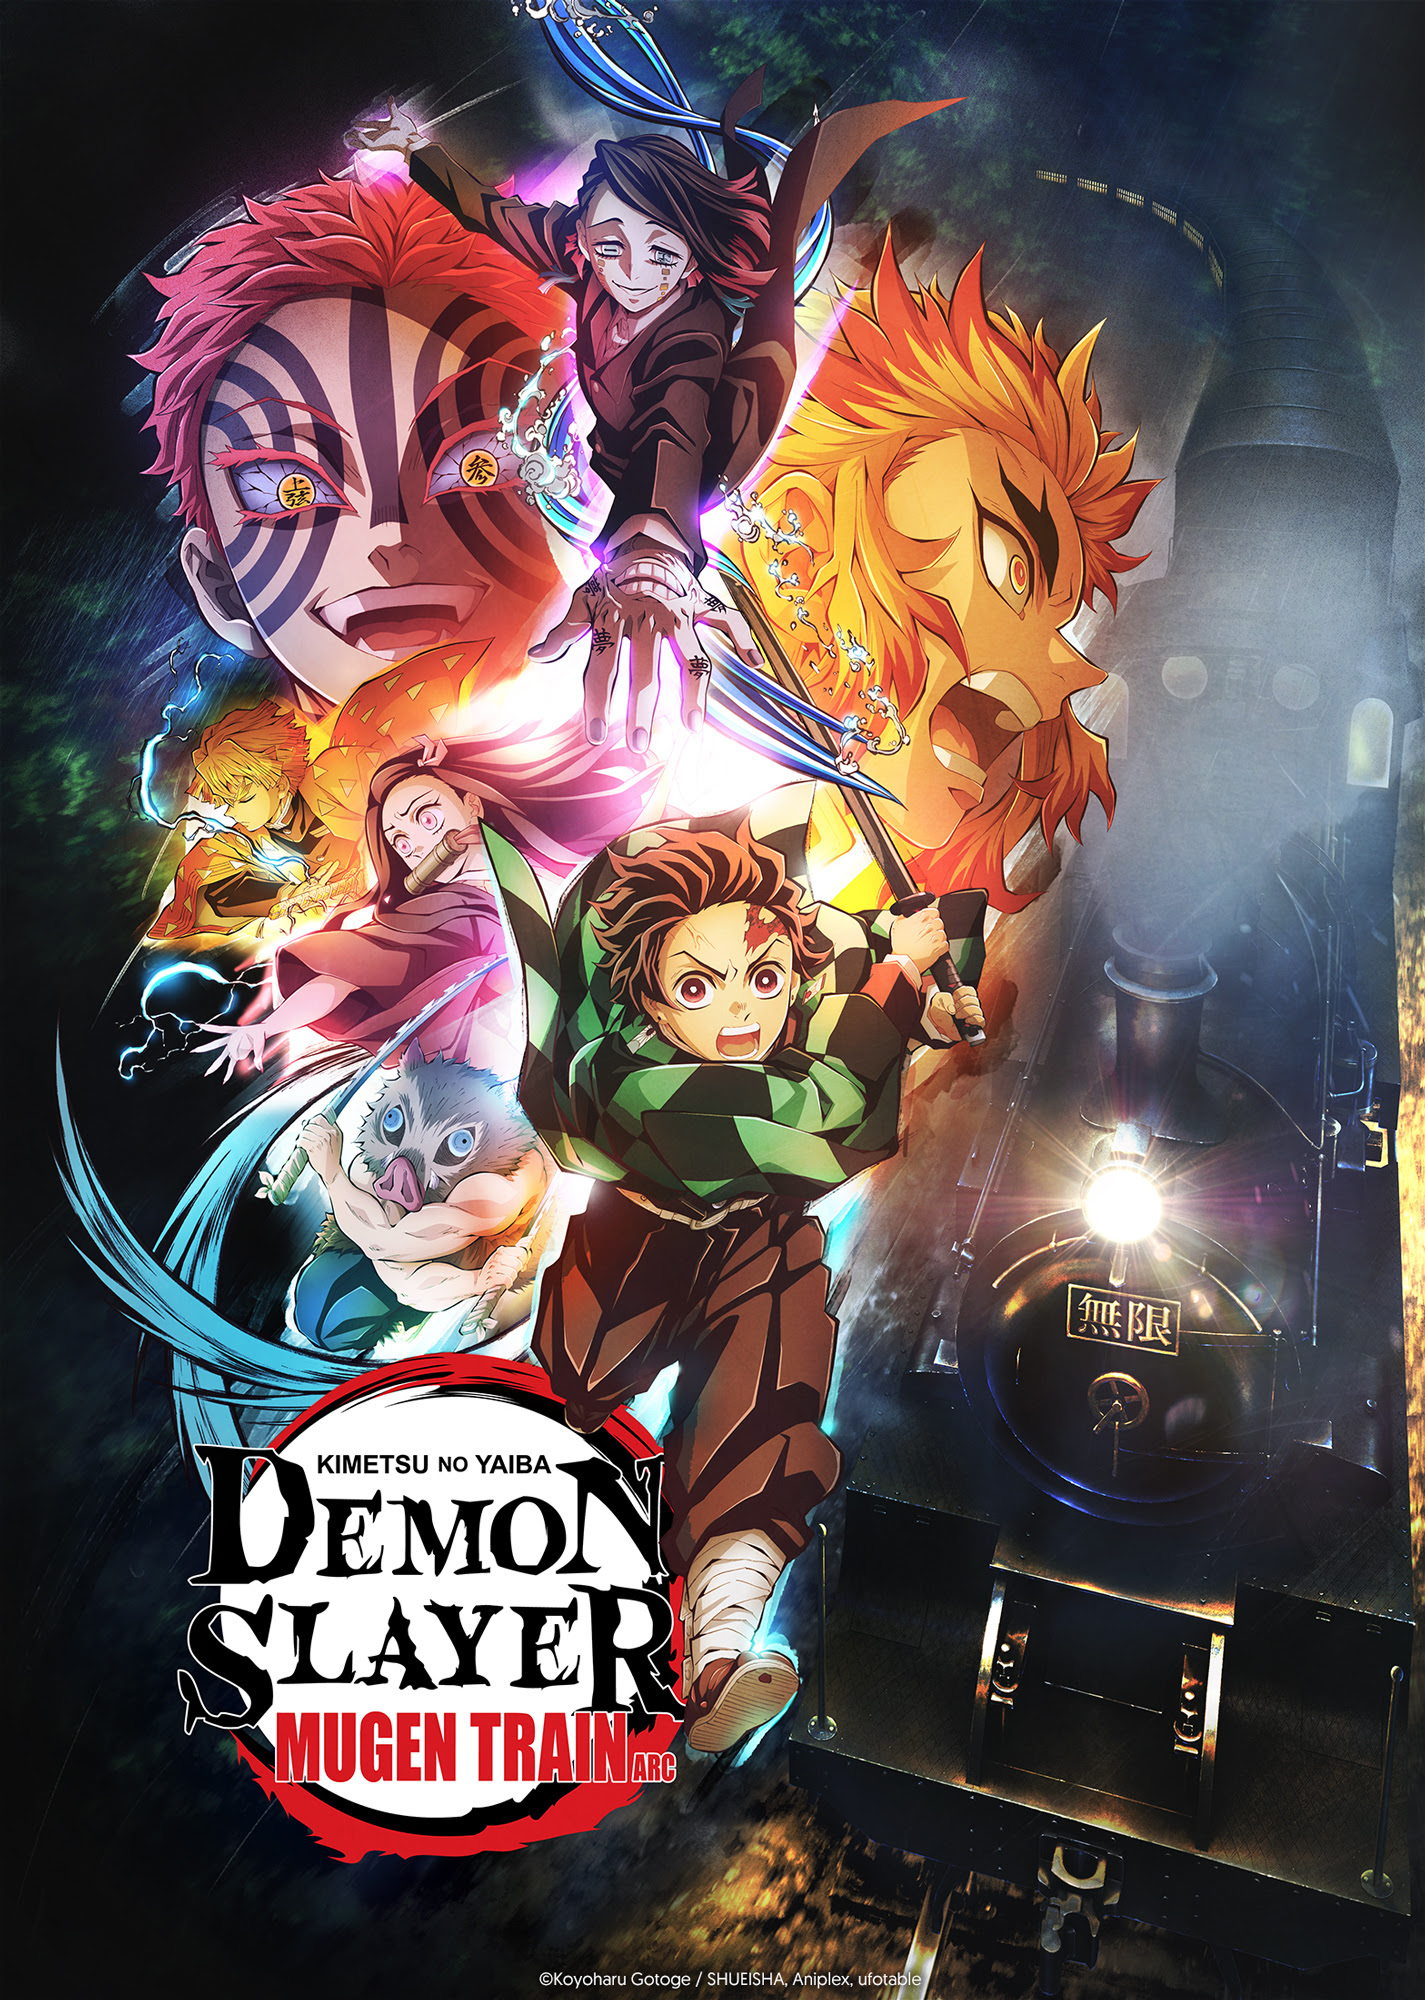 Demon Slayer: Crunchyroll estreia neste domingo a dublagem do arco